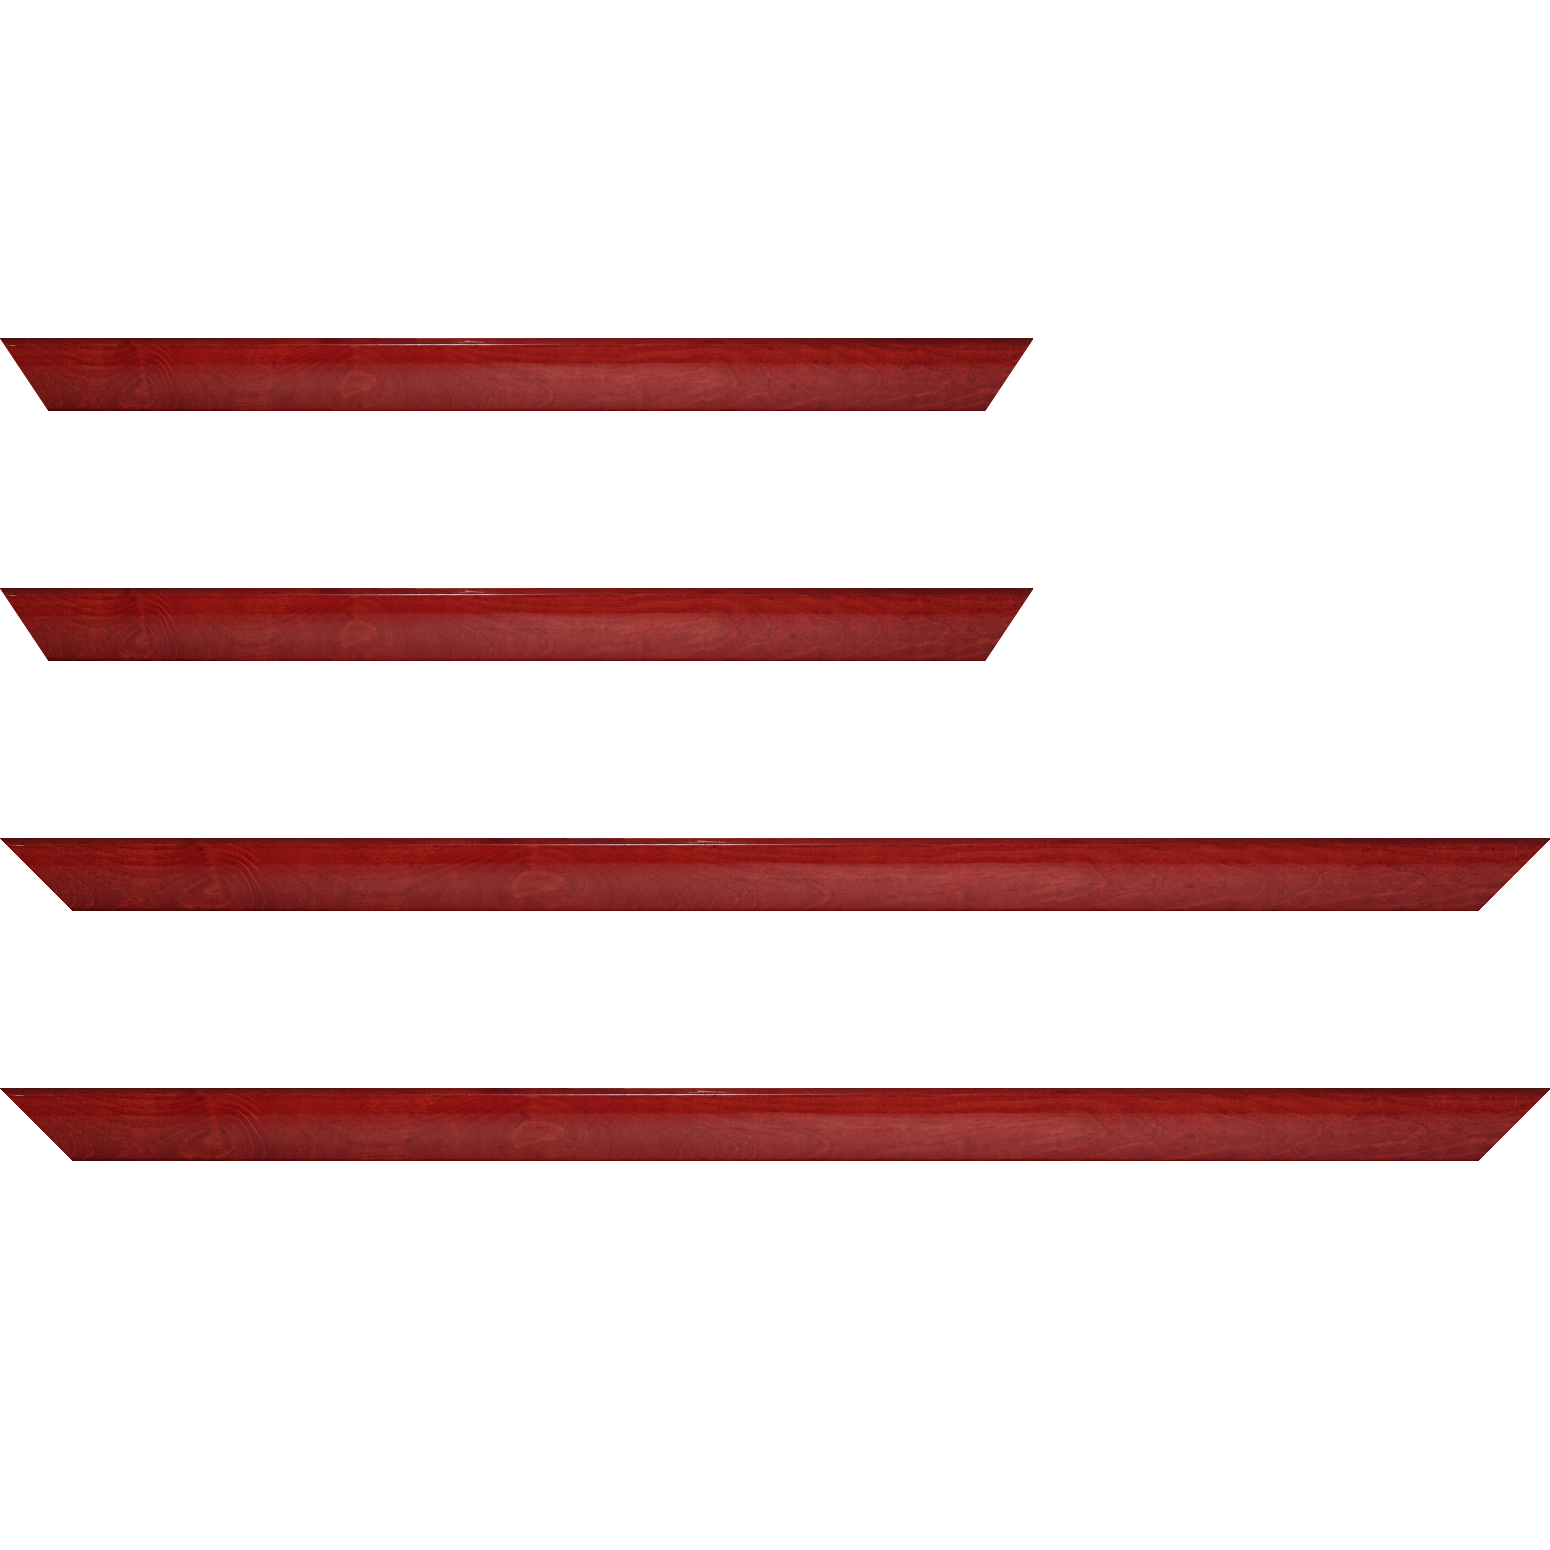 Baguette bois profil arrondi en pente plongeant largeur 2.4cm couleur rouge cerise finition vernis brillant,veine du bois  apparent (pin) , - 30x90